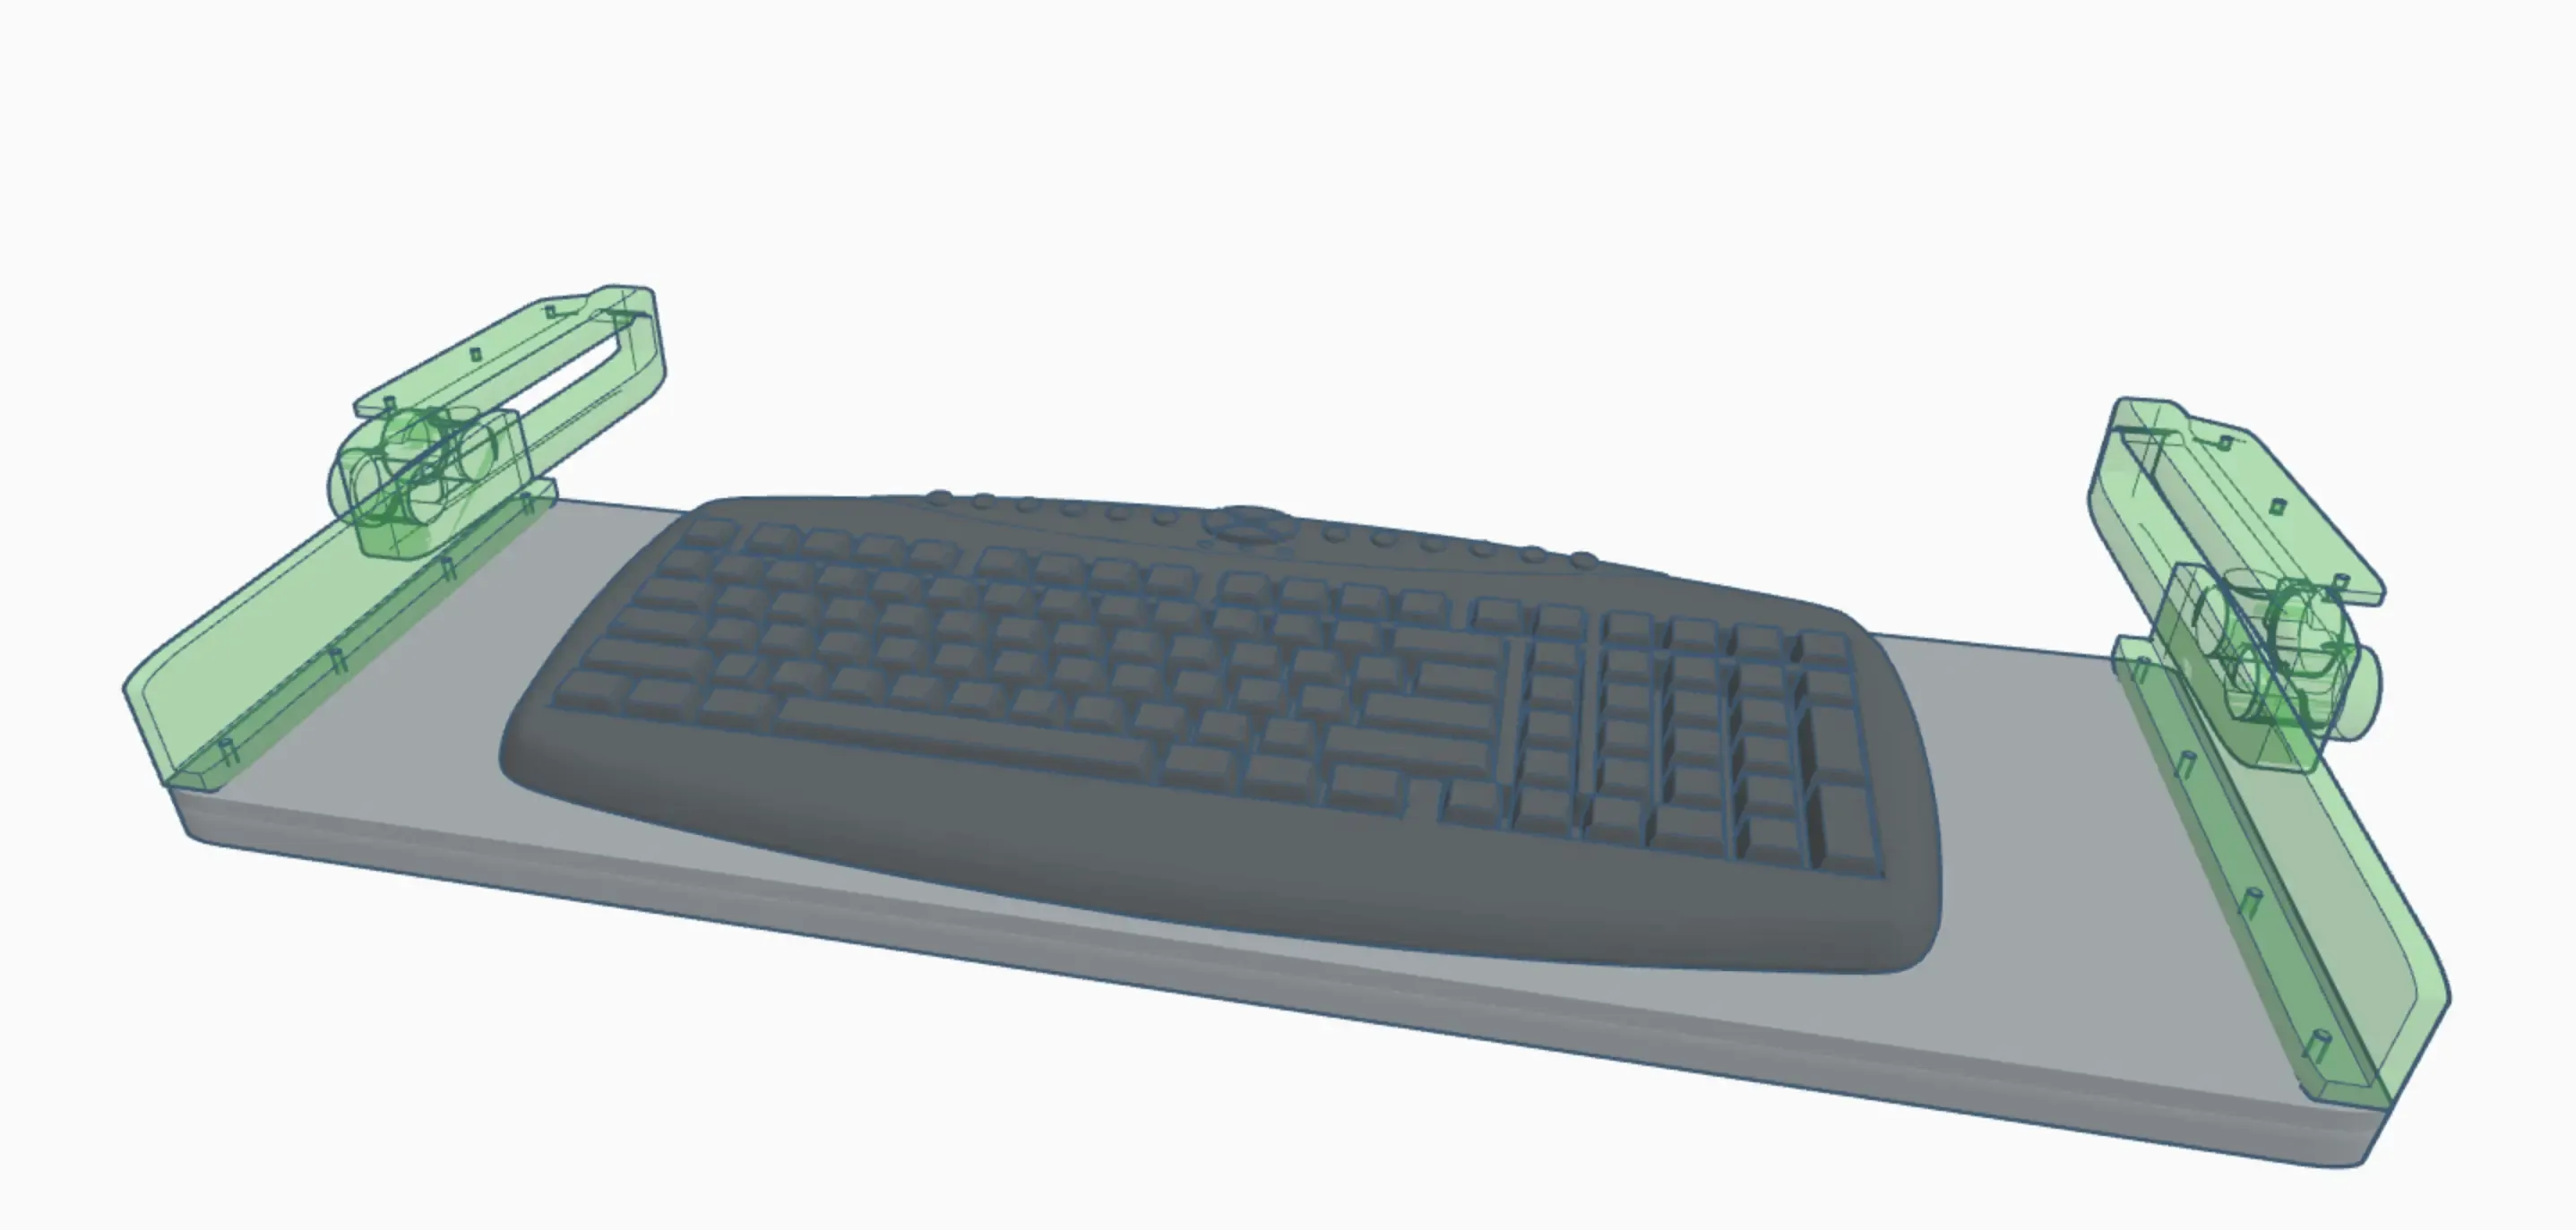 Keyboard Sliders - Sliding Shelf Brackets For PC Desk